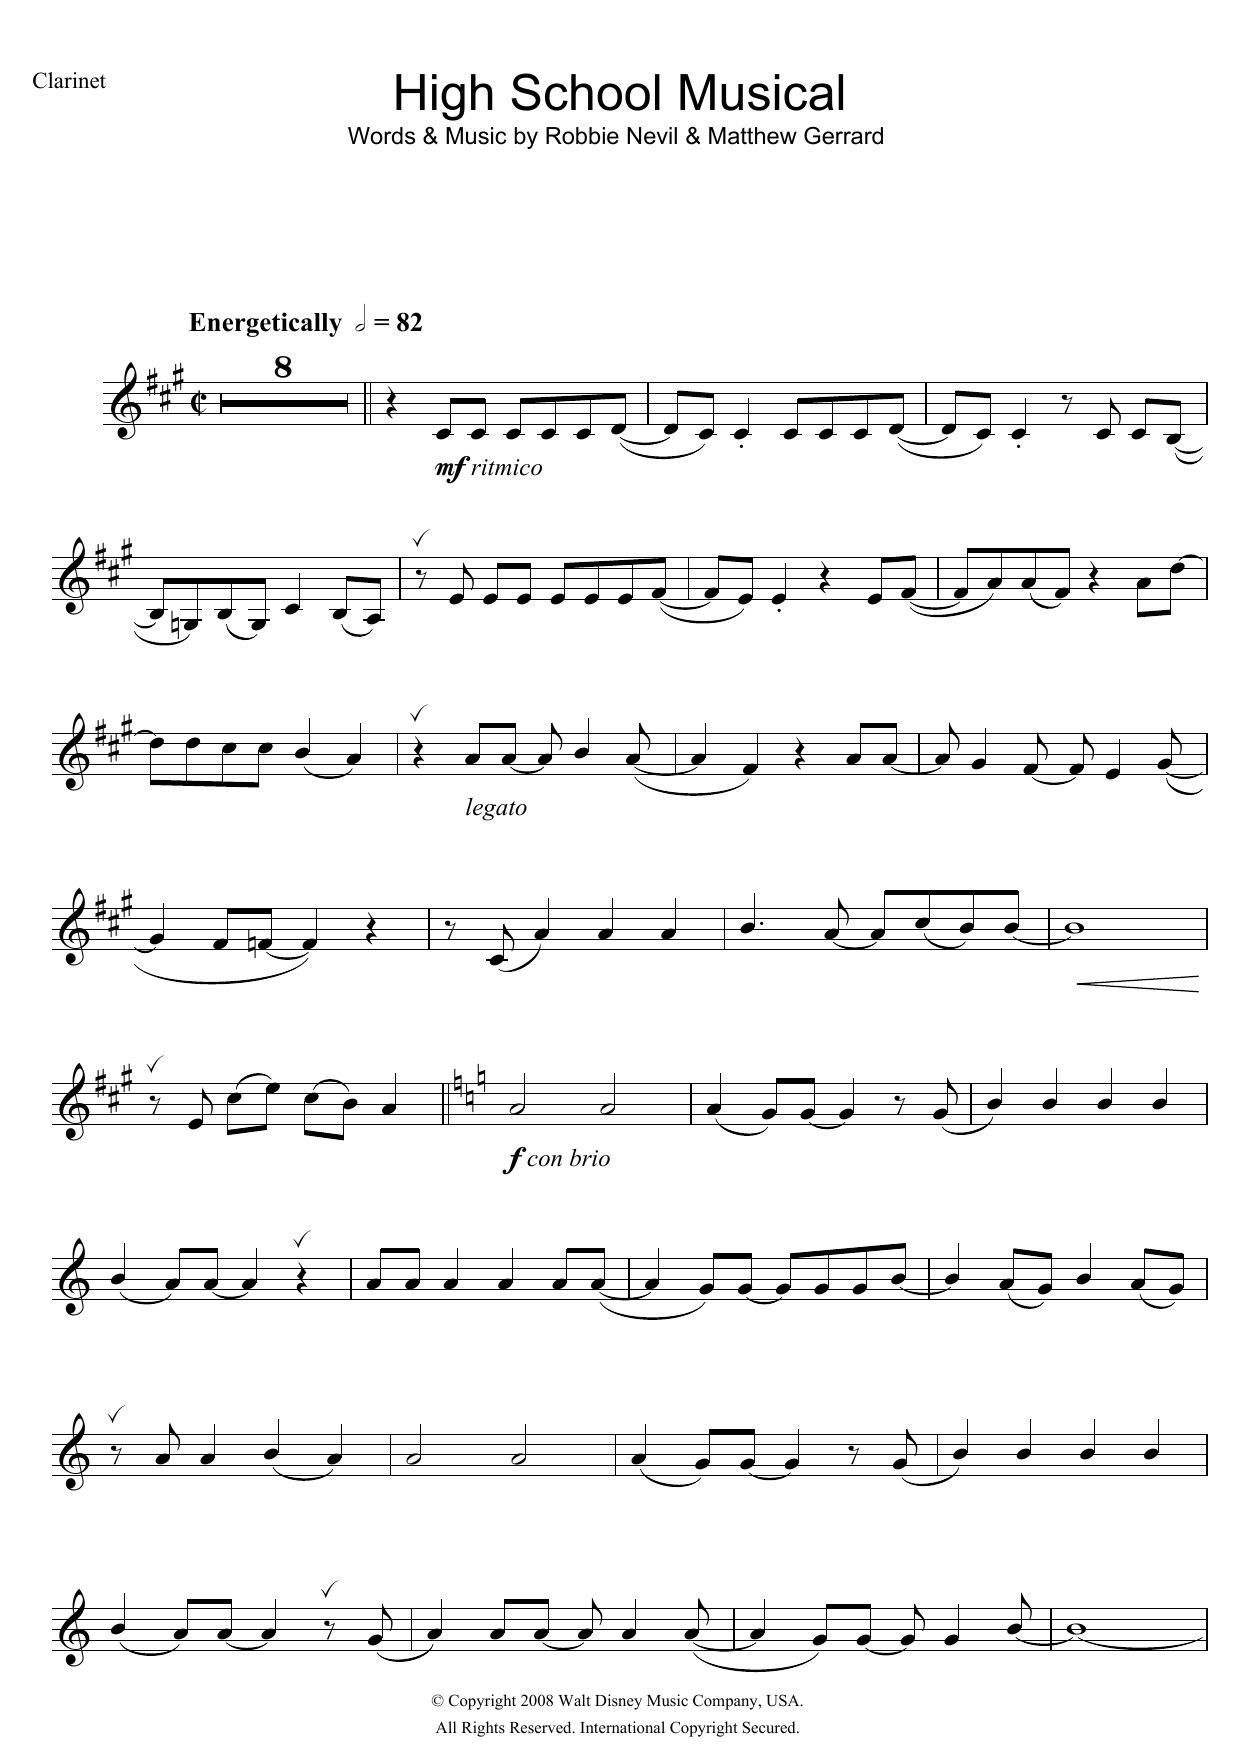 Download High School Musical High School Musical (from Walt Disney P Sheet Music